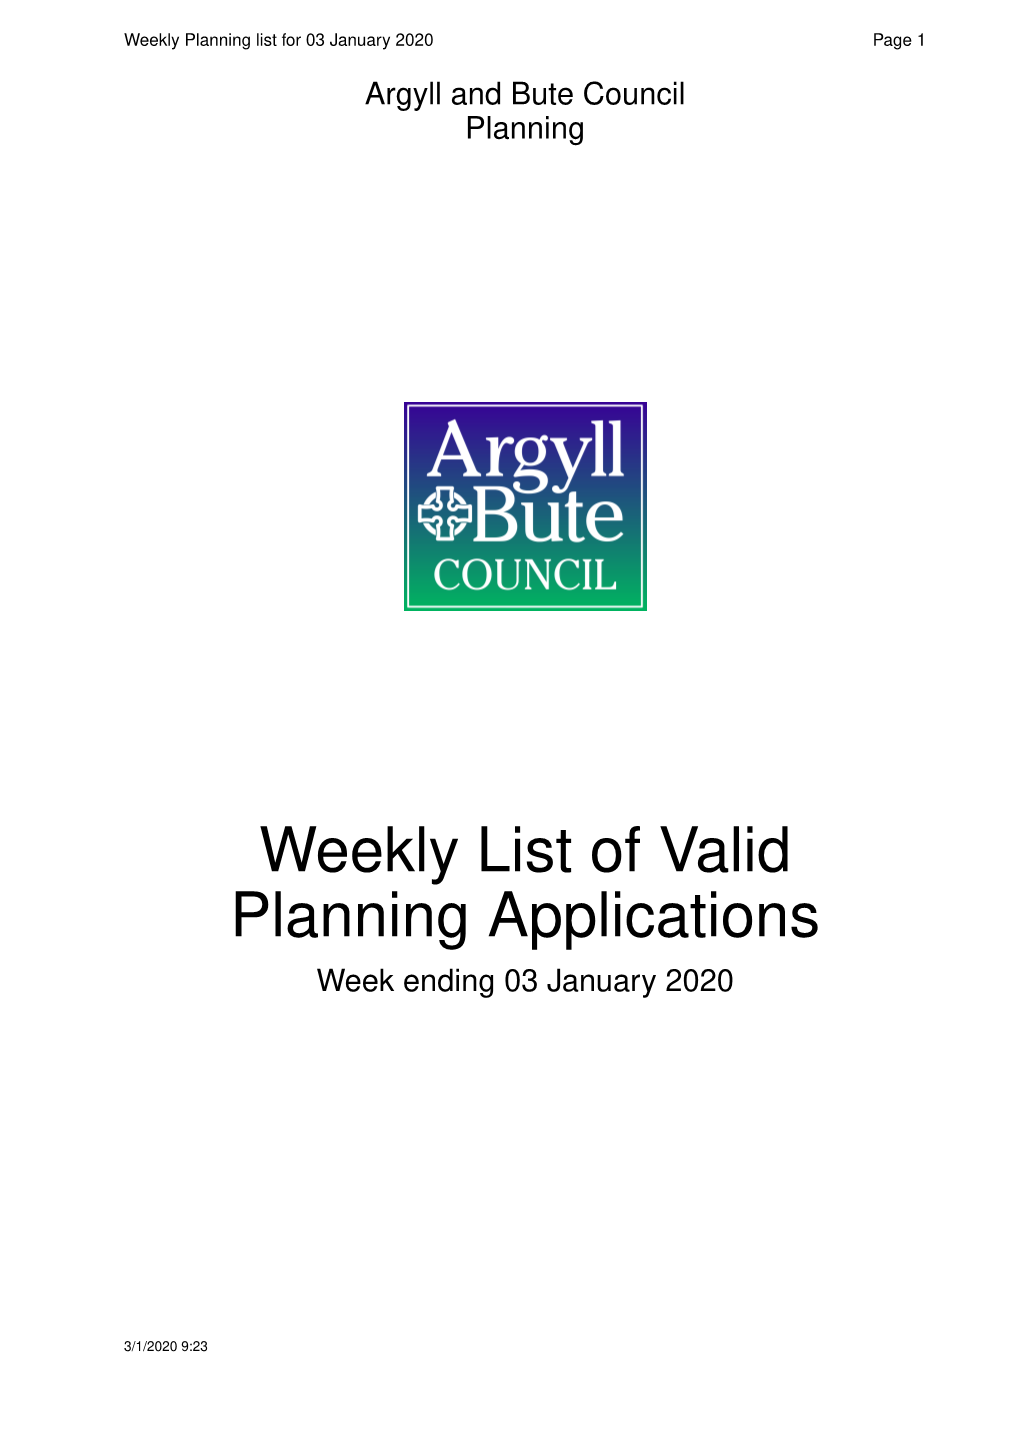 Weekly List of Valid Planning Applications Week Ending 03 Januar Y 2020